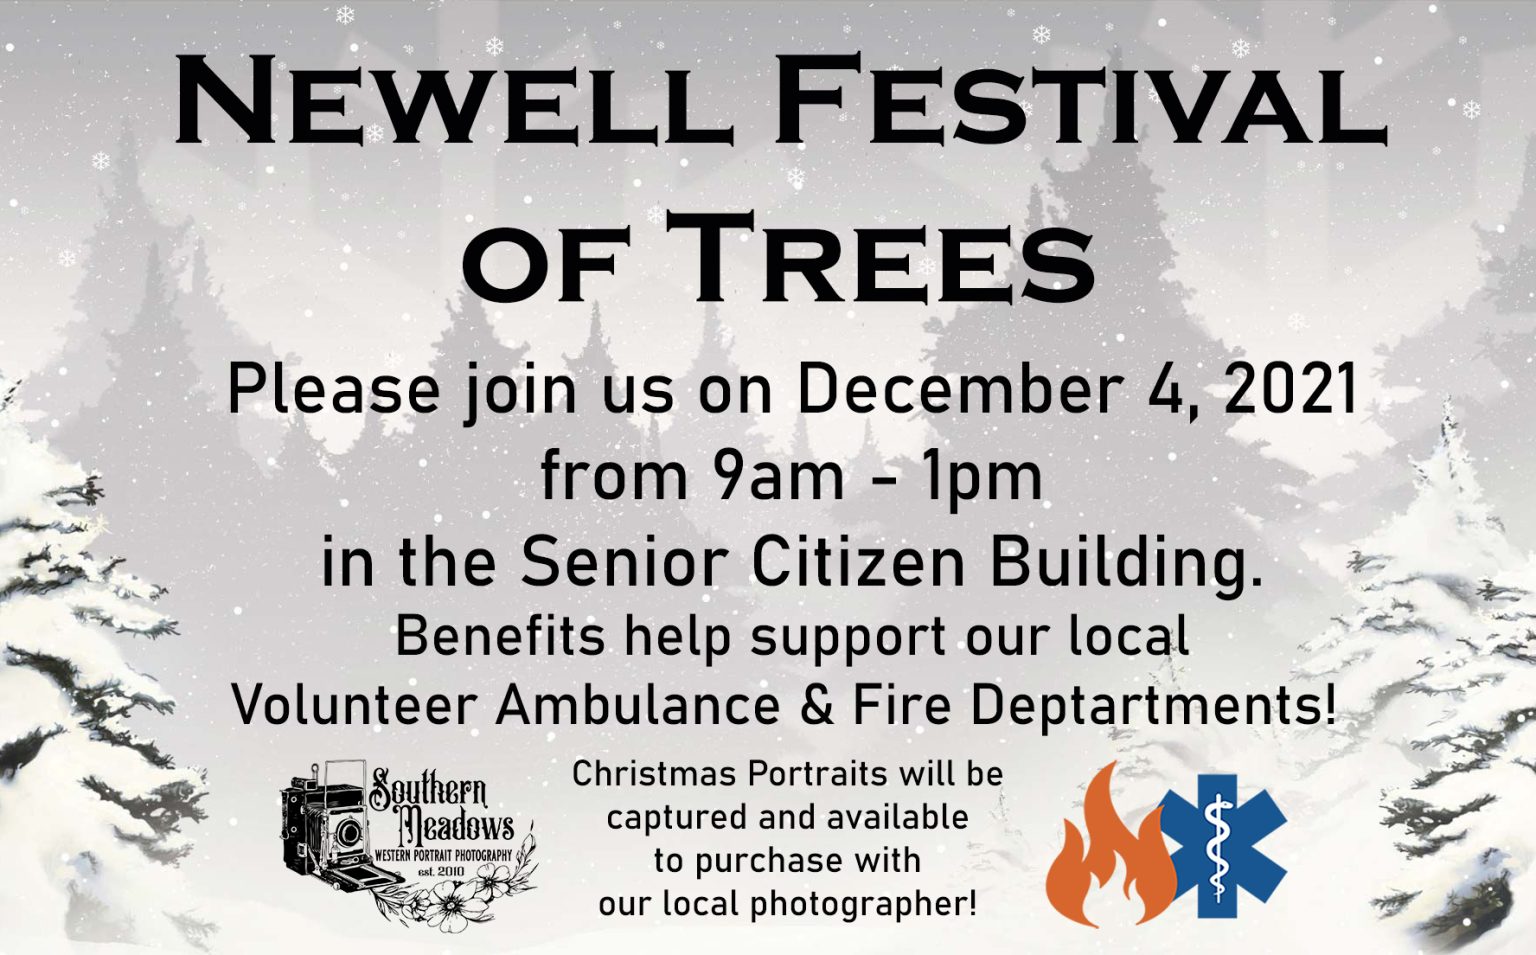 Newell Festival of Trees 2021 Newell Festival of Trees